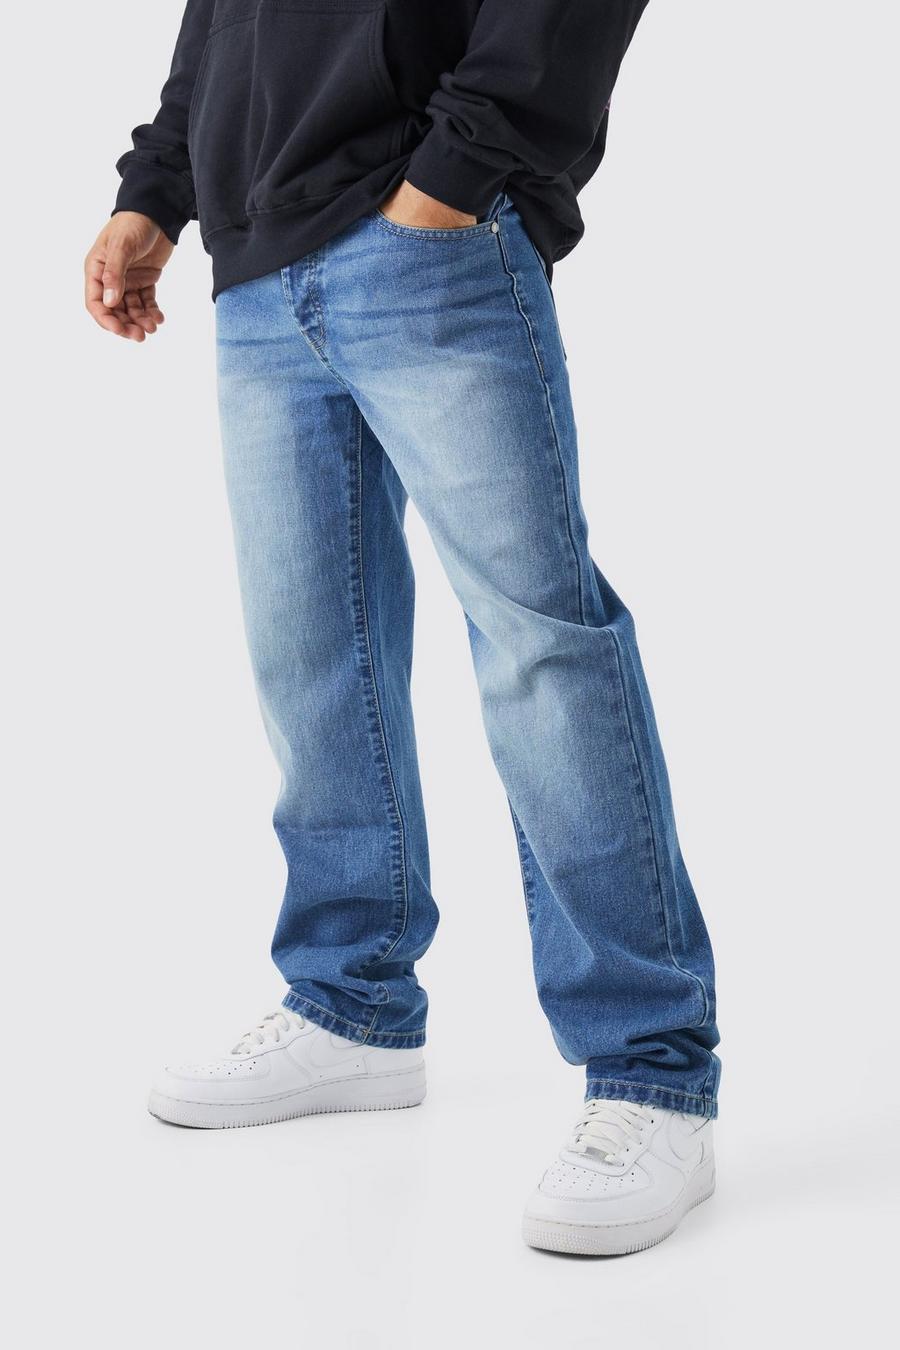 Mid blue tribal two tone jean jacket w cutoffs hem 